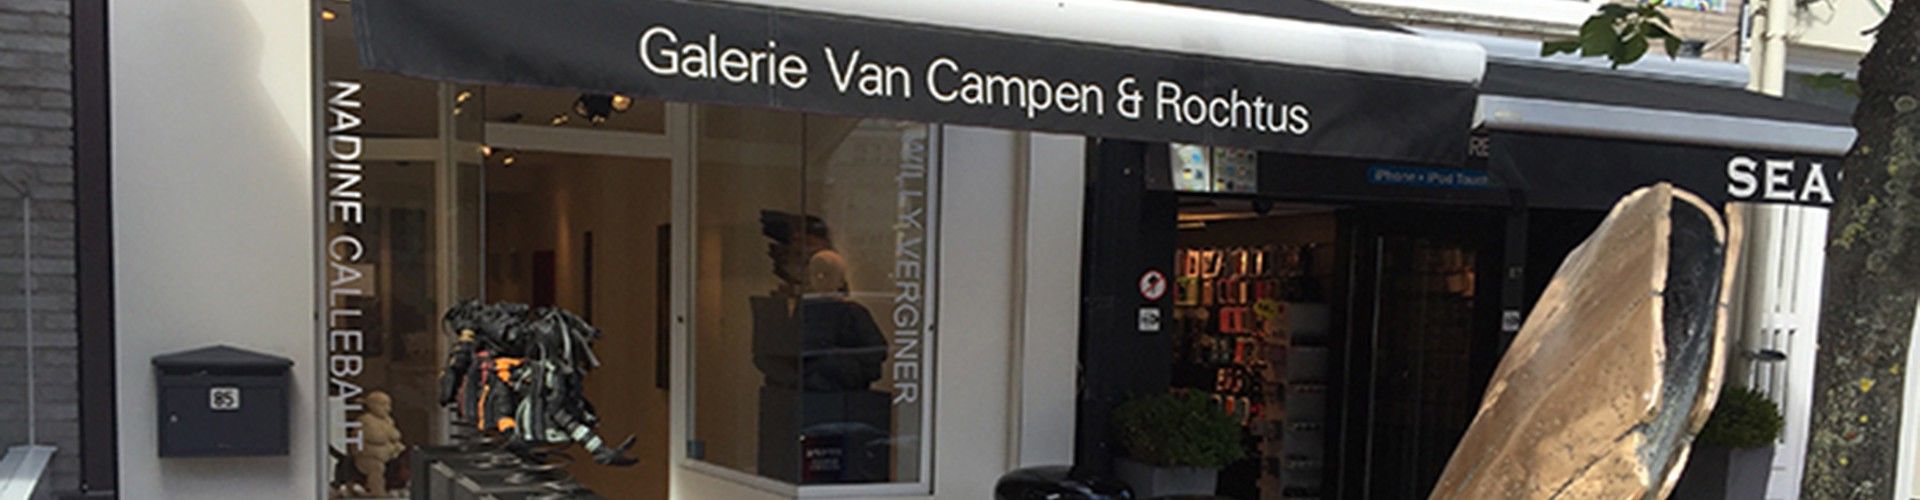 Galerie Van Campen & Rochtus